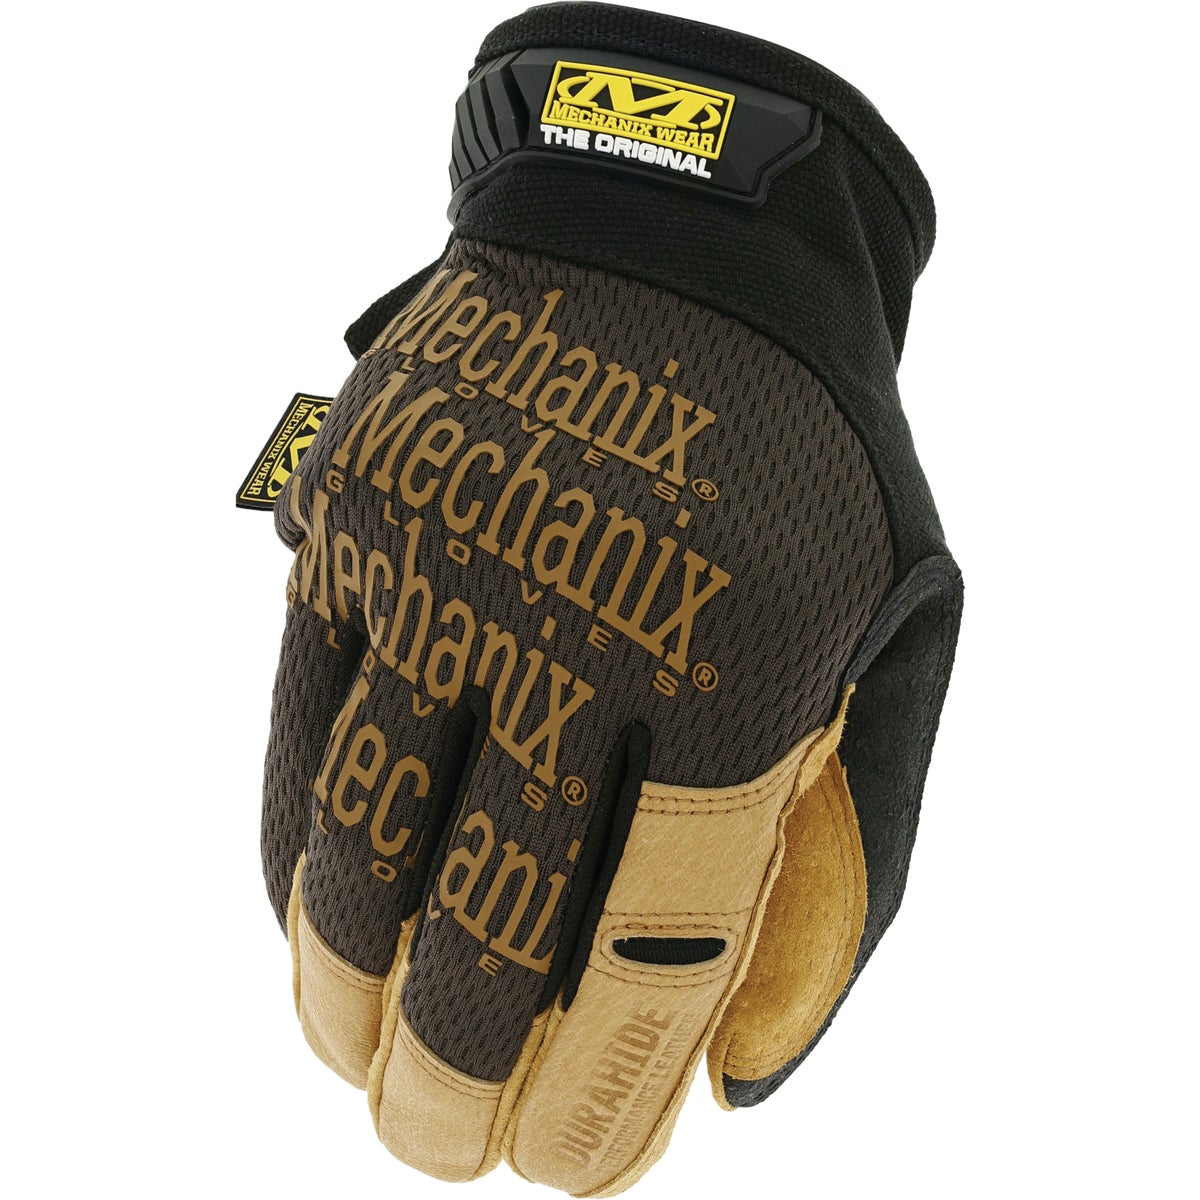 LMG-75-011 Mechanix Wear Durahide FastFit Work Glove